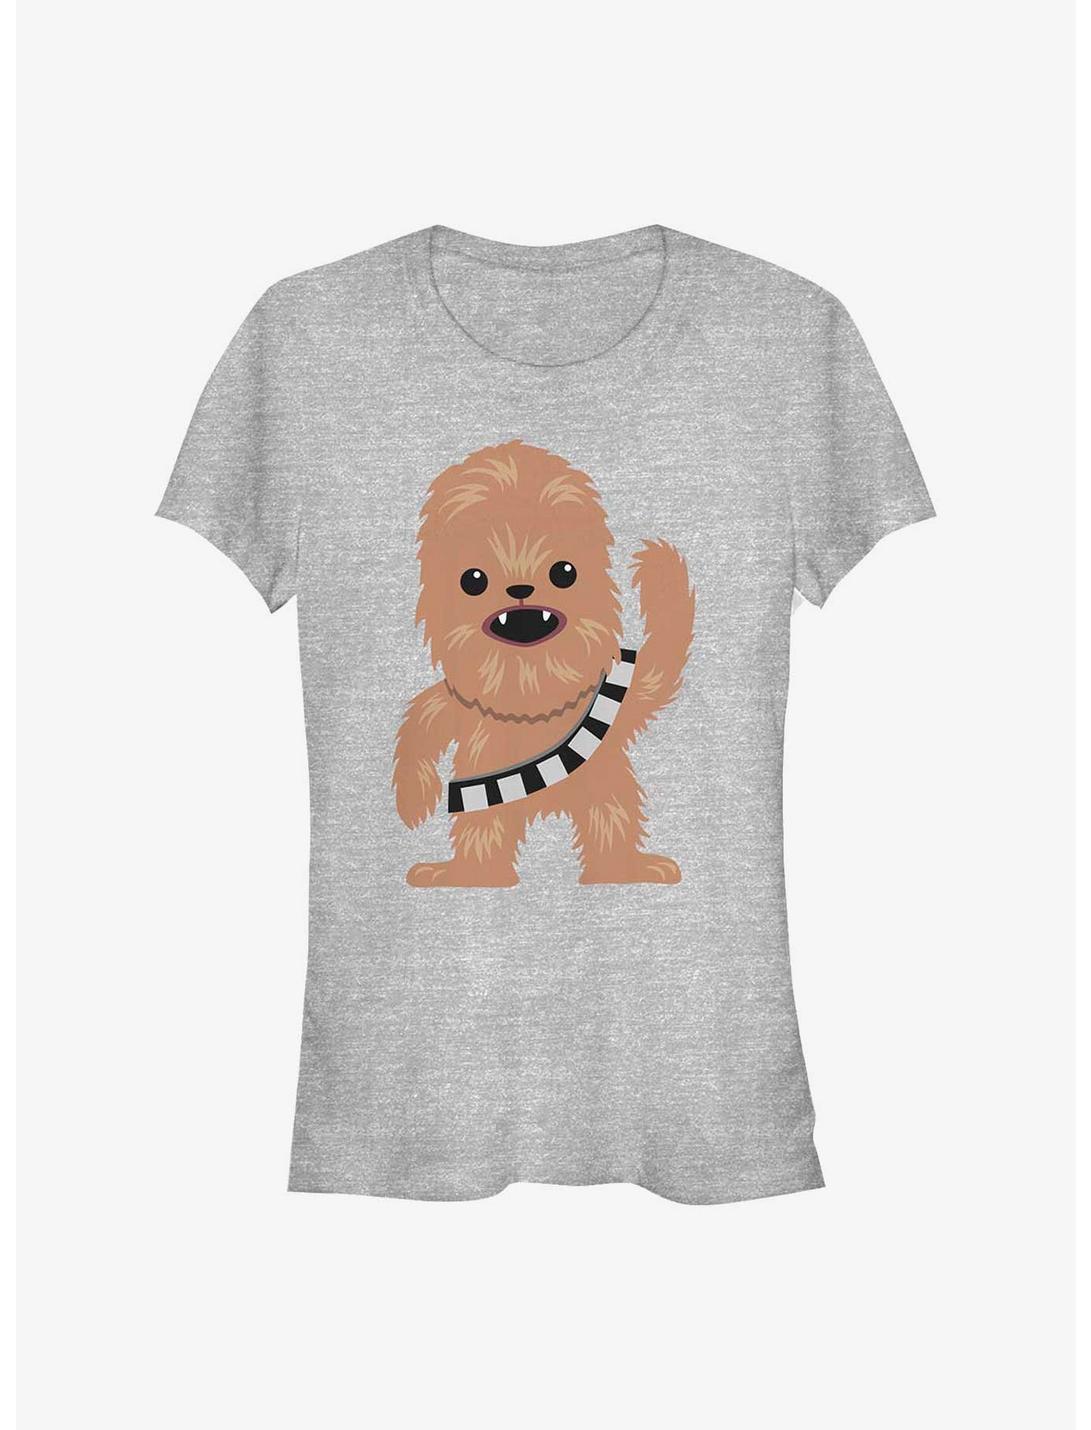 Star Wars Chewie Cutie Girls T-Shirt, ATH HTR, hi-res